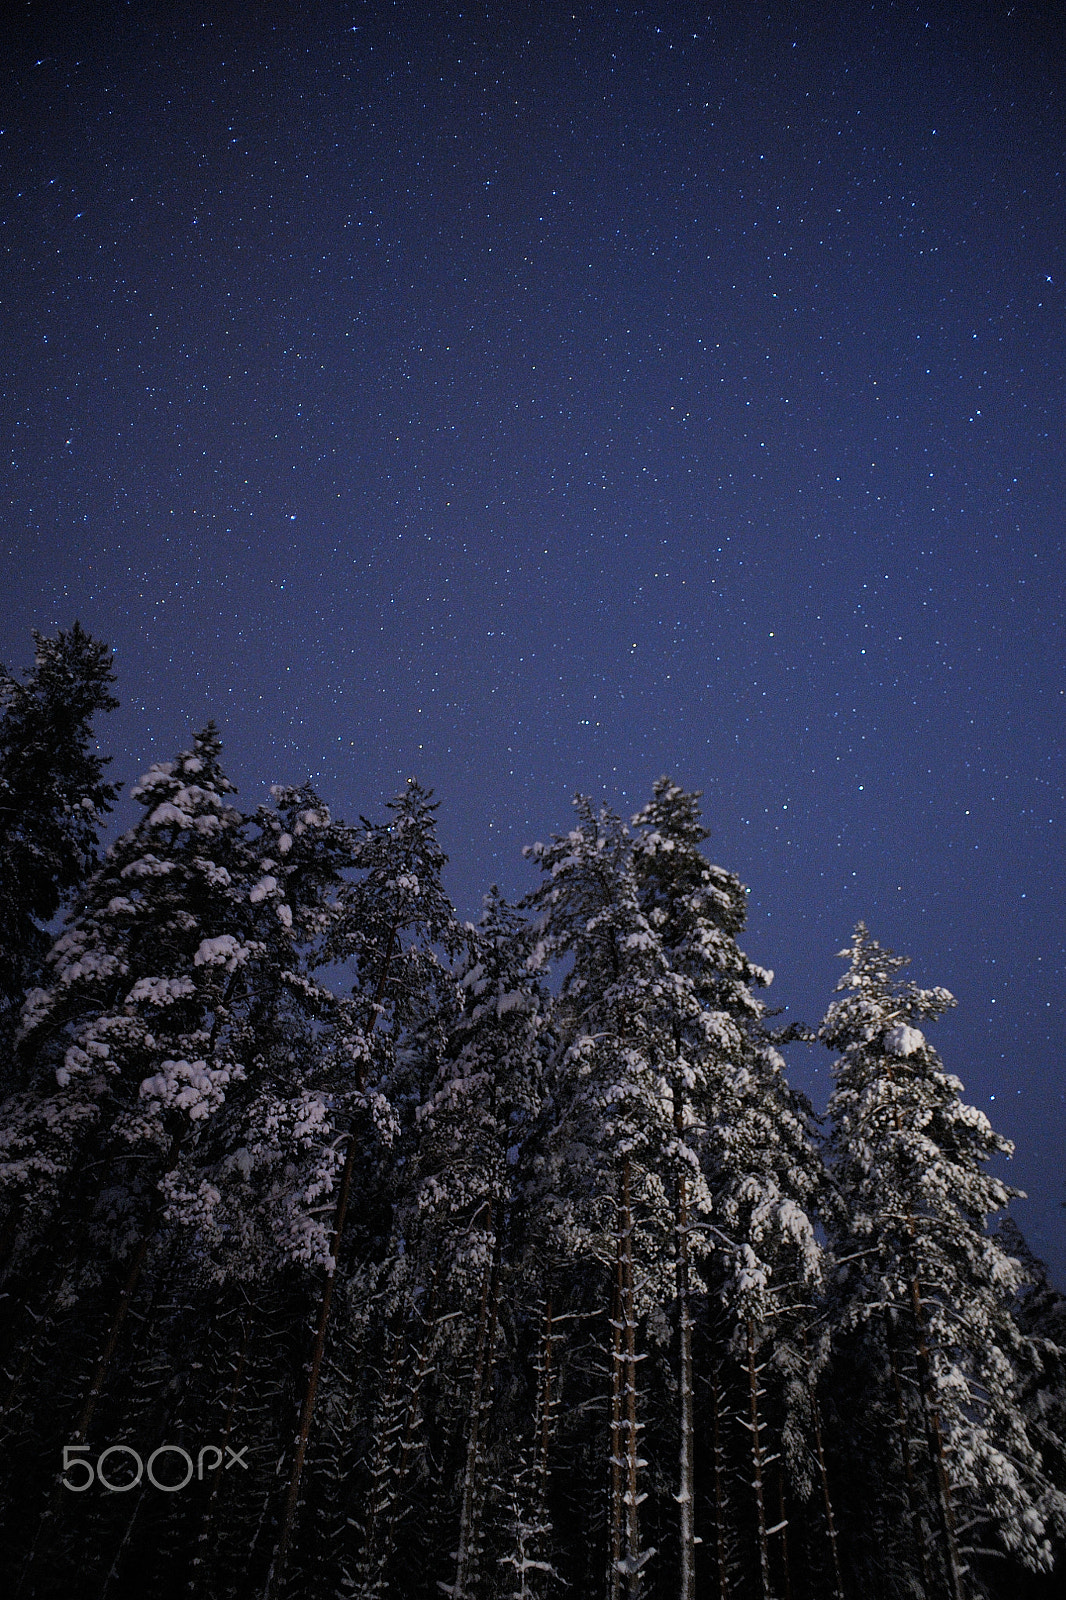 AF Nikkor 20mm f/2.8 sample photo. Winter forest photography